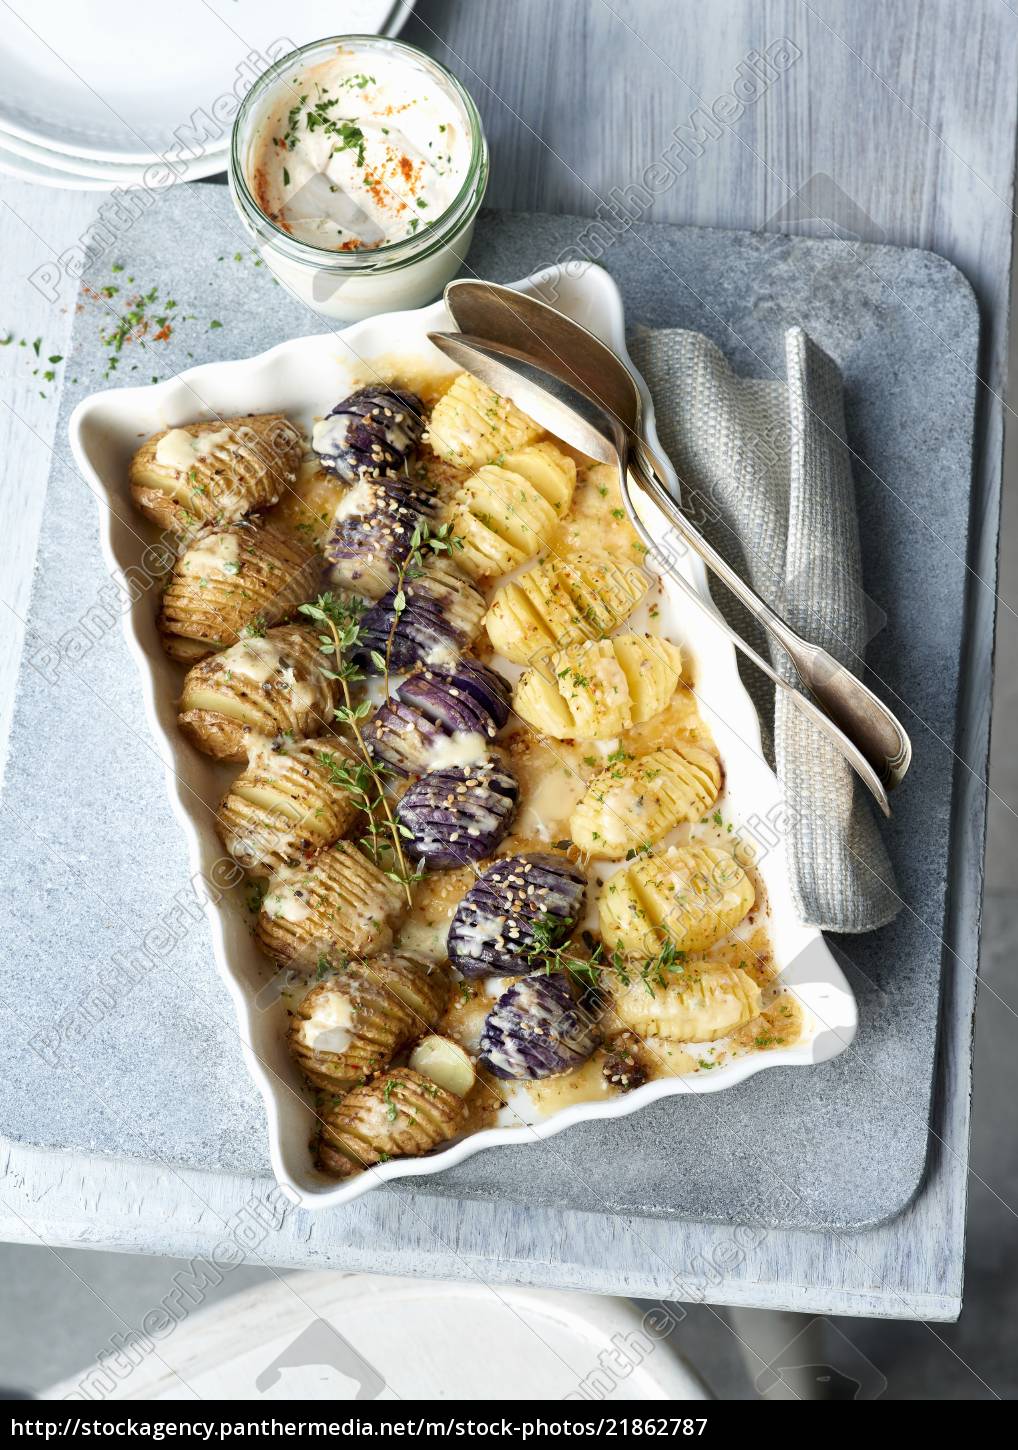 Drei gebackene Kartoffeln mit Knoblauch-Dip - Lizenzfreies Bild ...